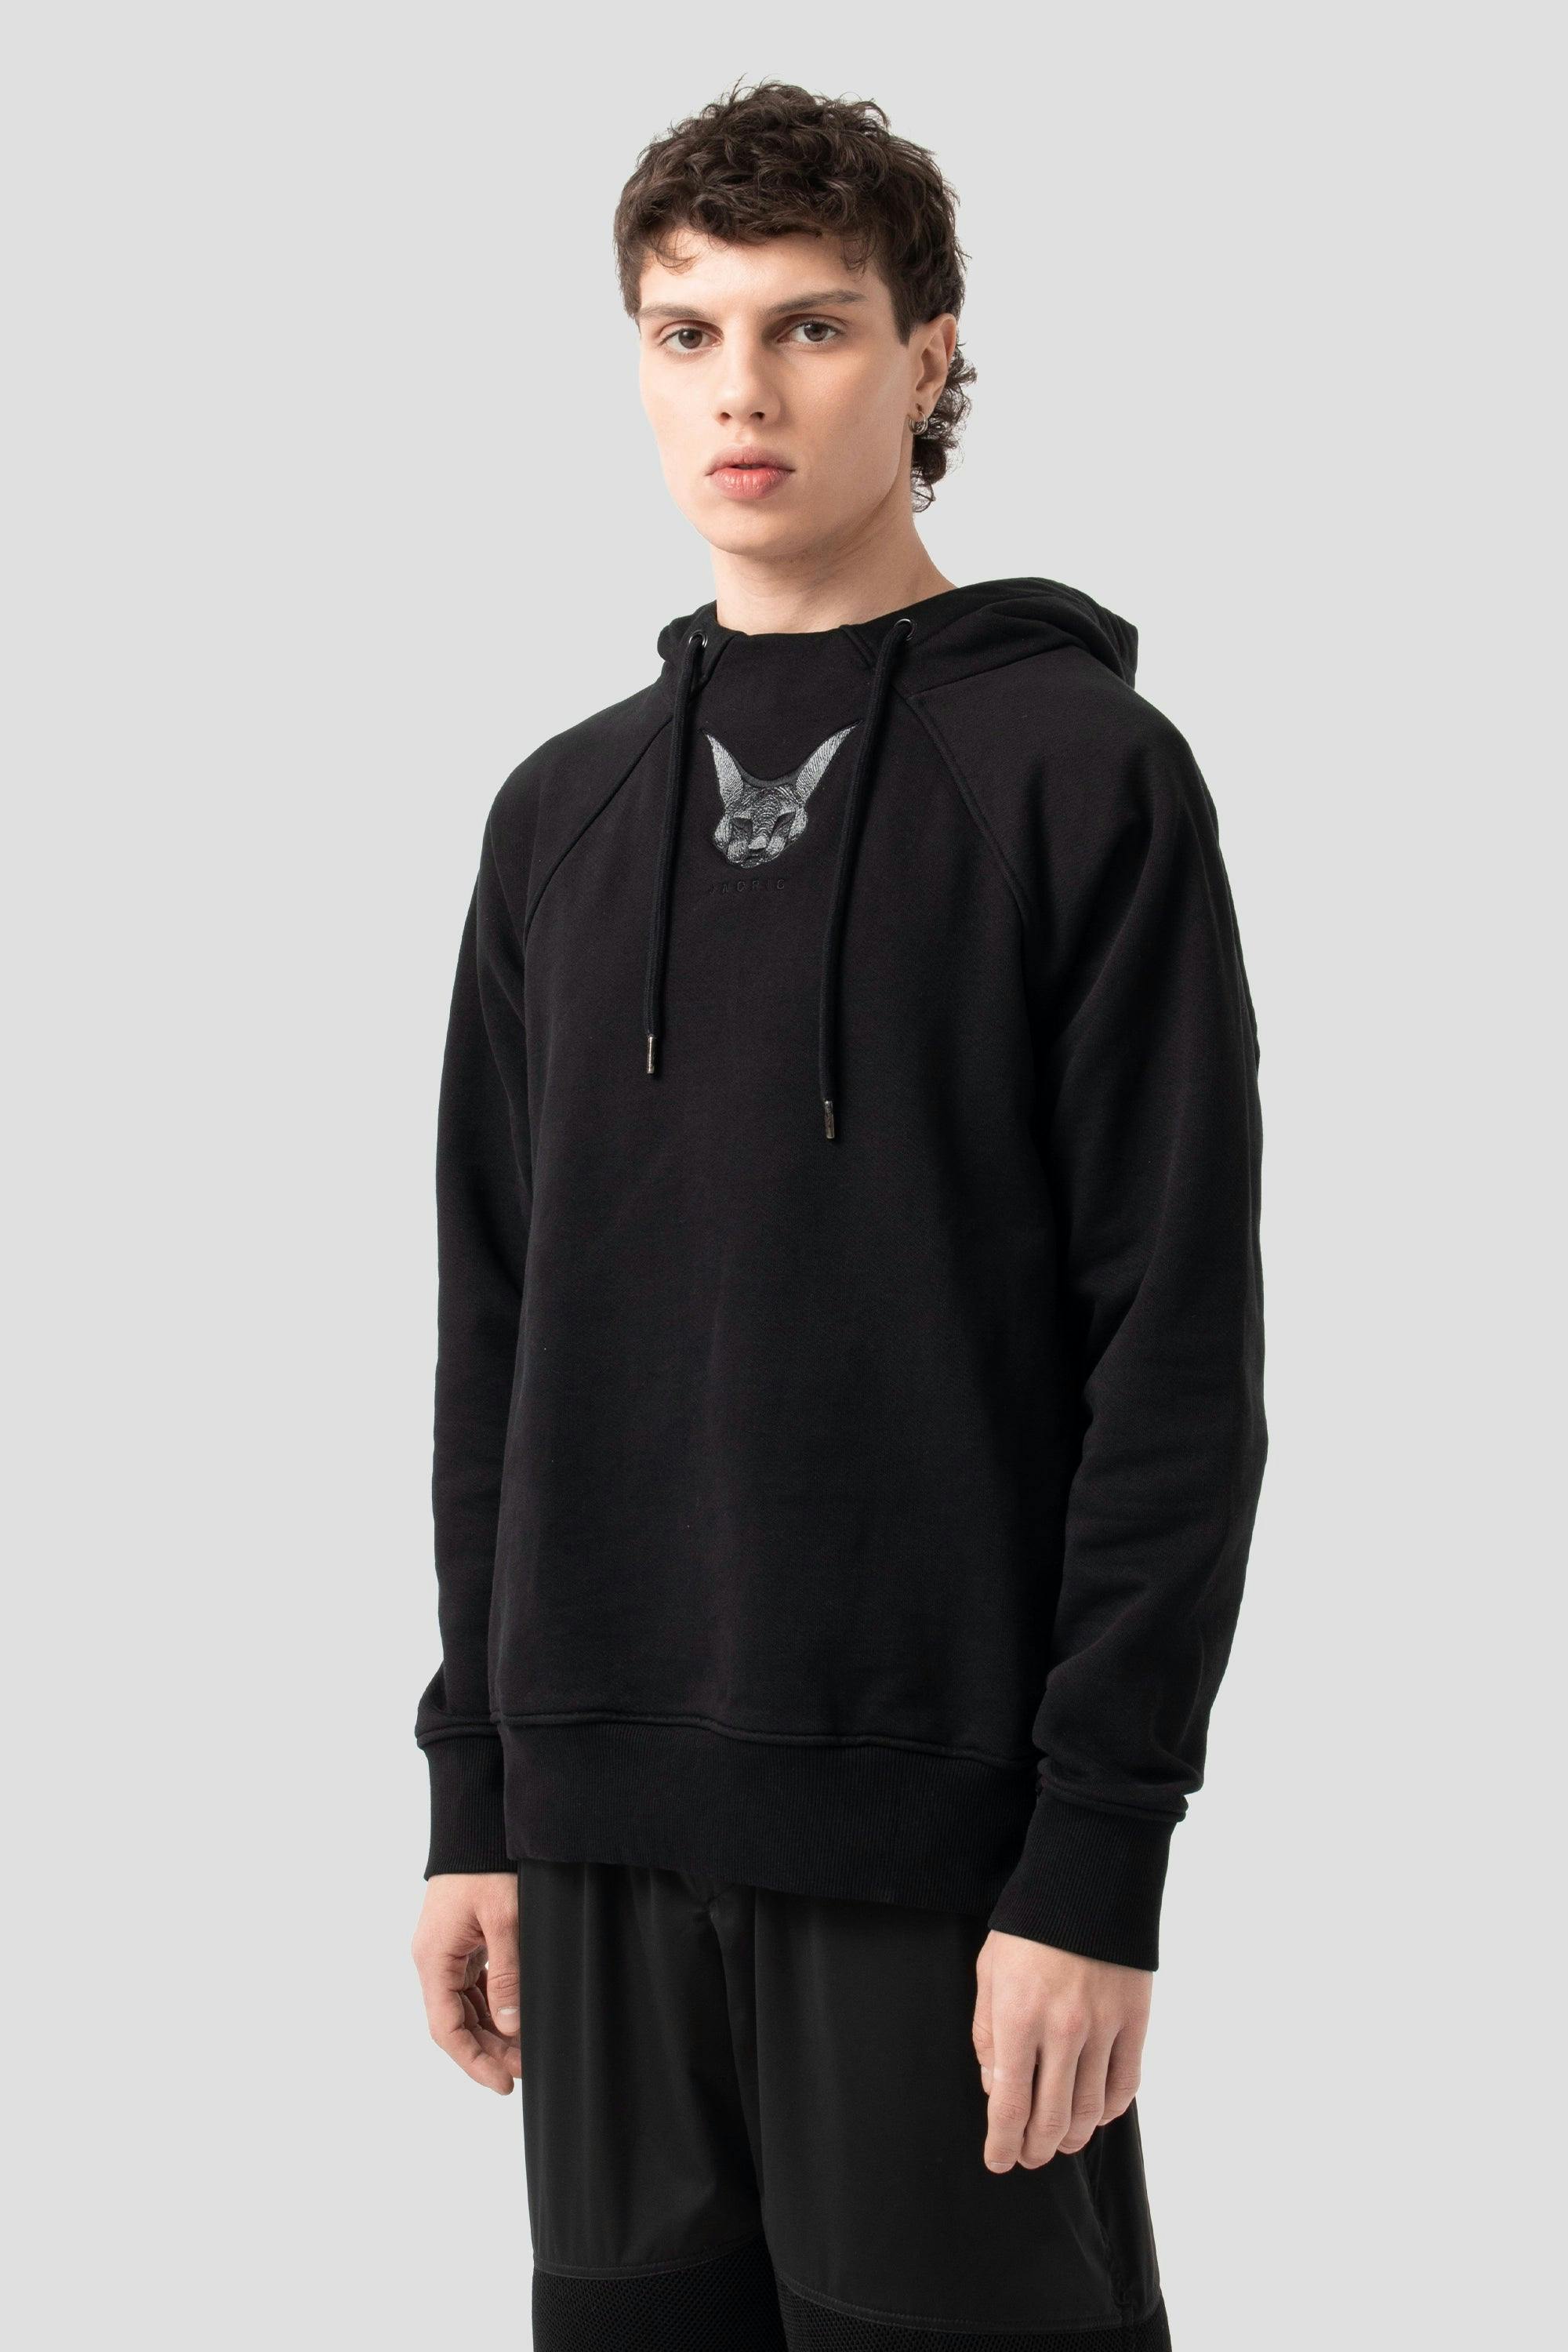 Sphynx JNORIG essential hooded sweatshirt 